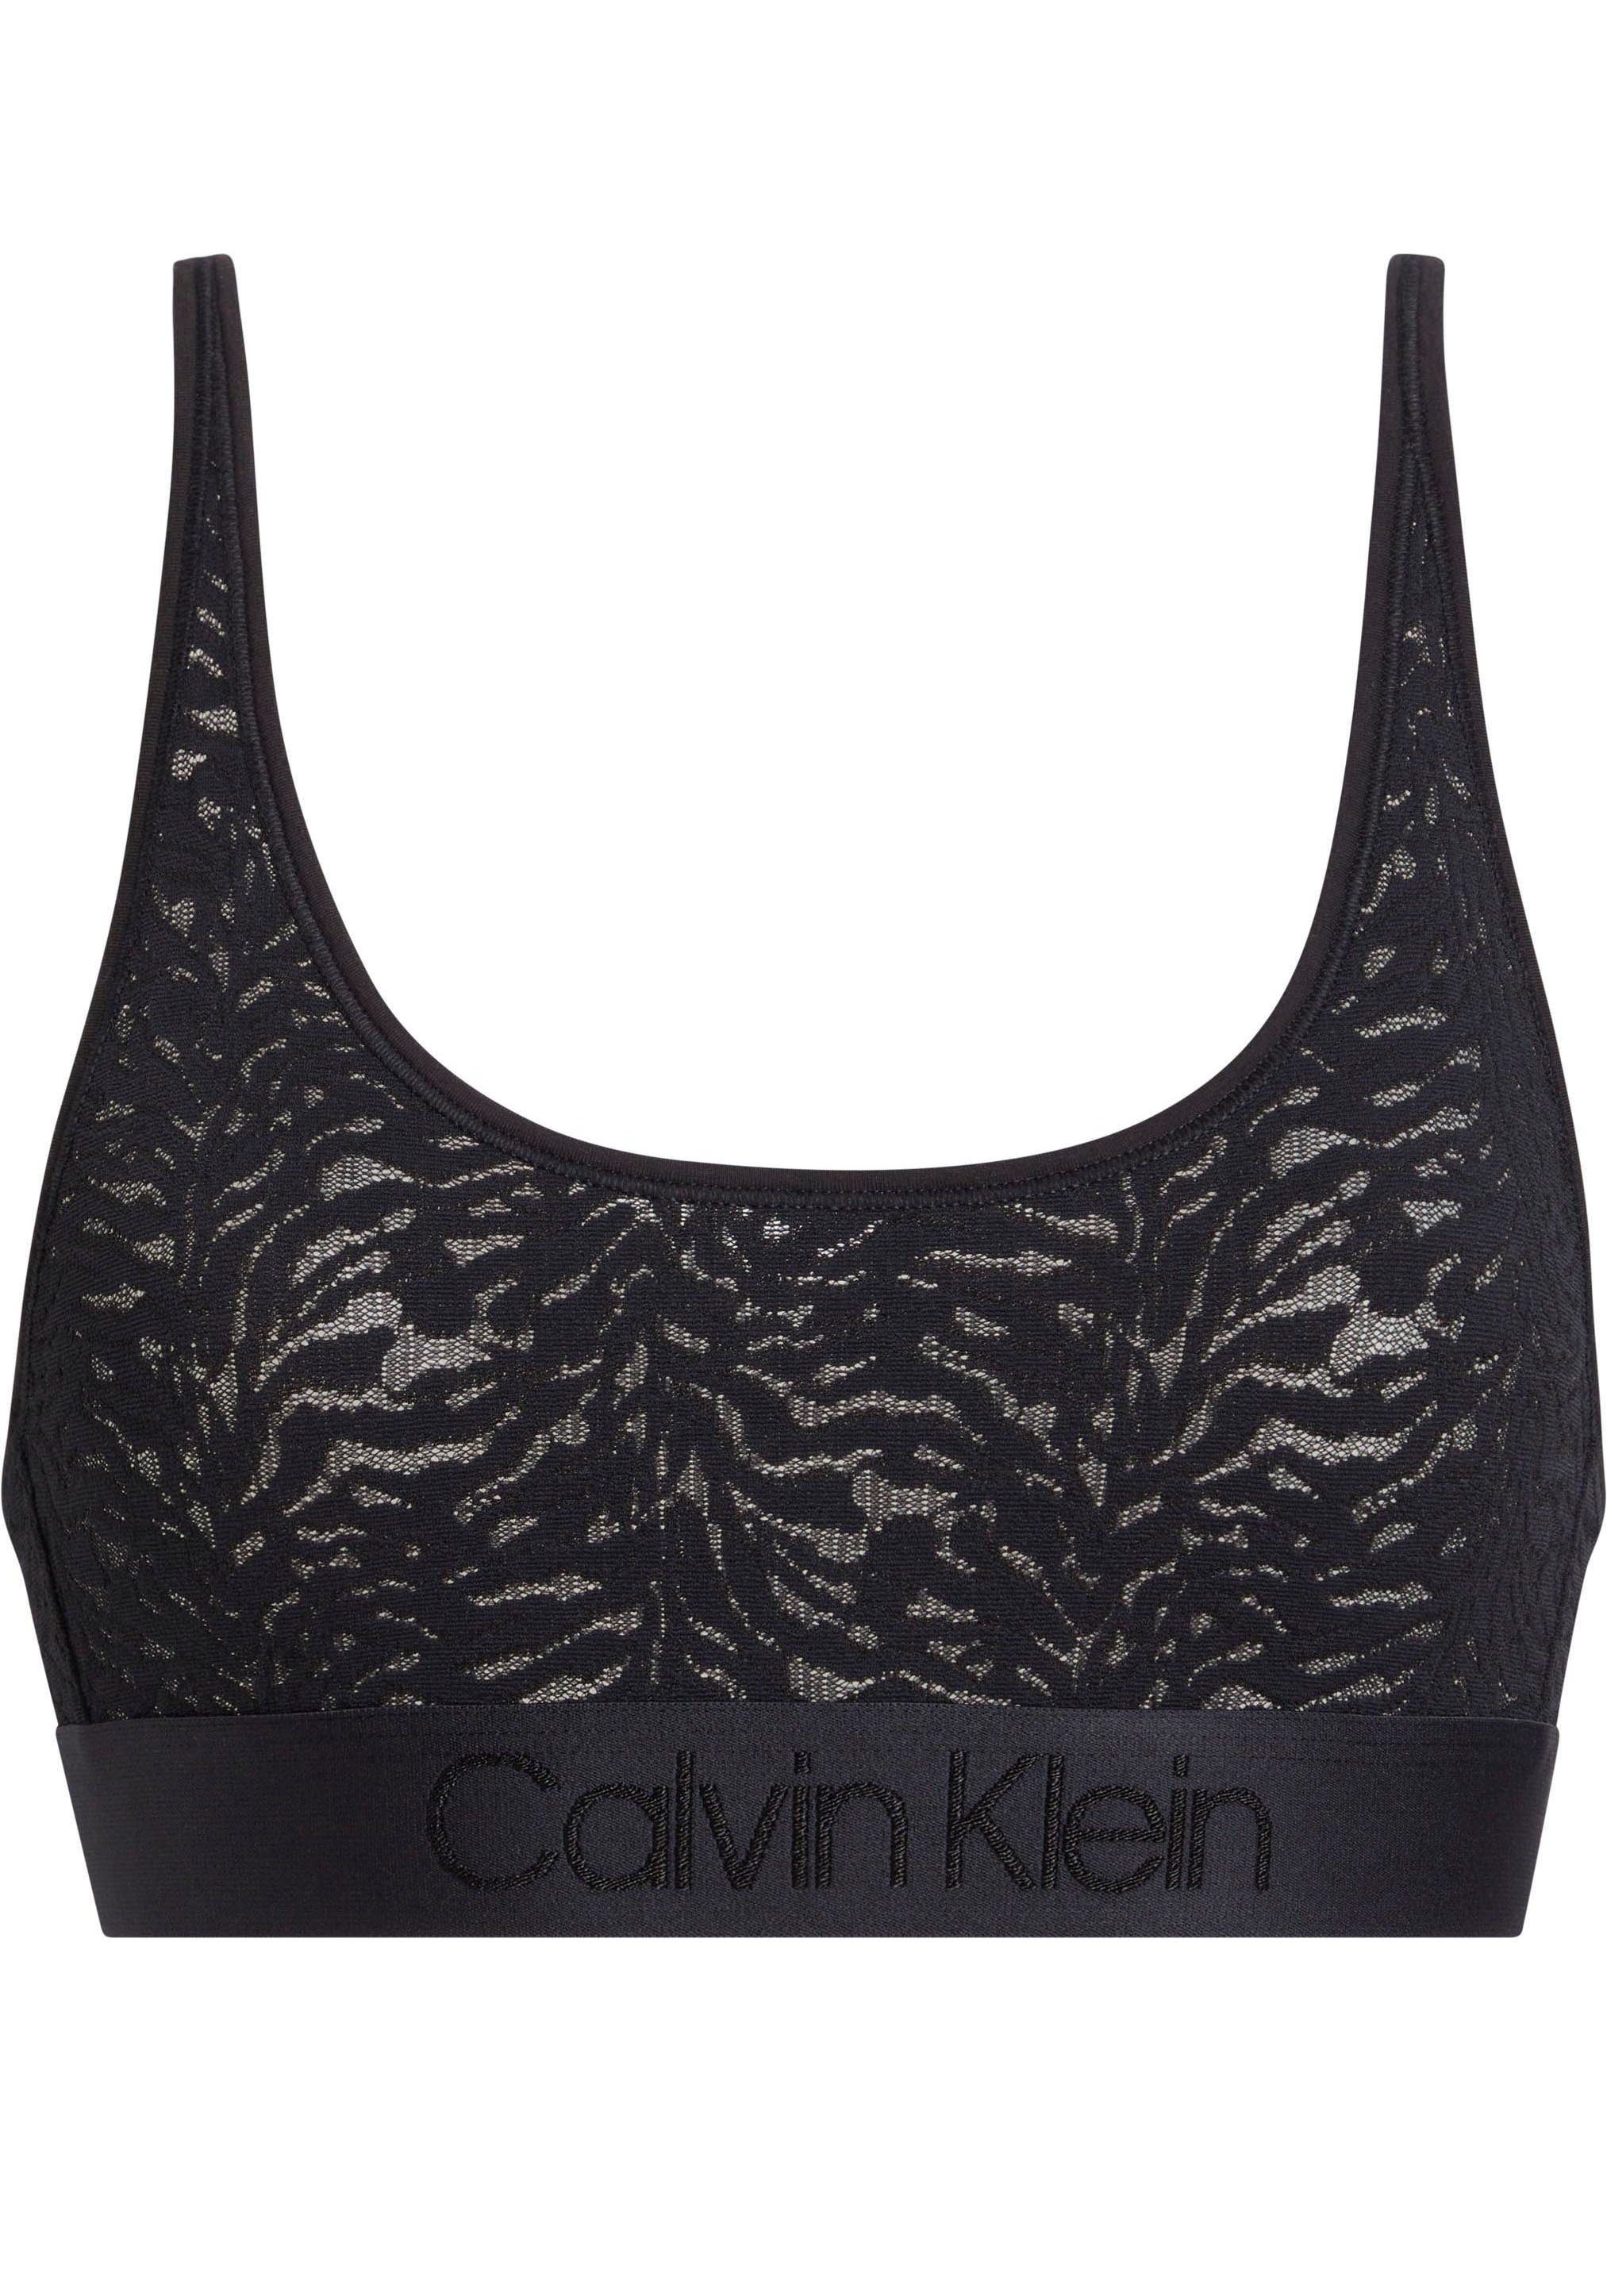 günstig Calvin Klein Underwear Bralette-BH BLACK BRALETTE aus UNLINED Spitze